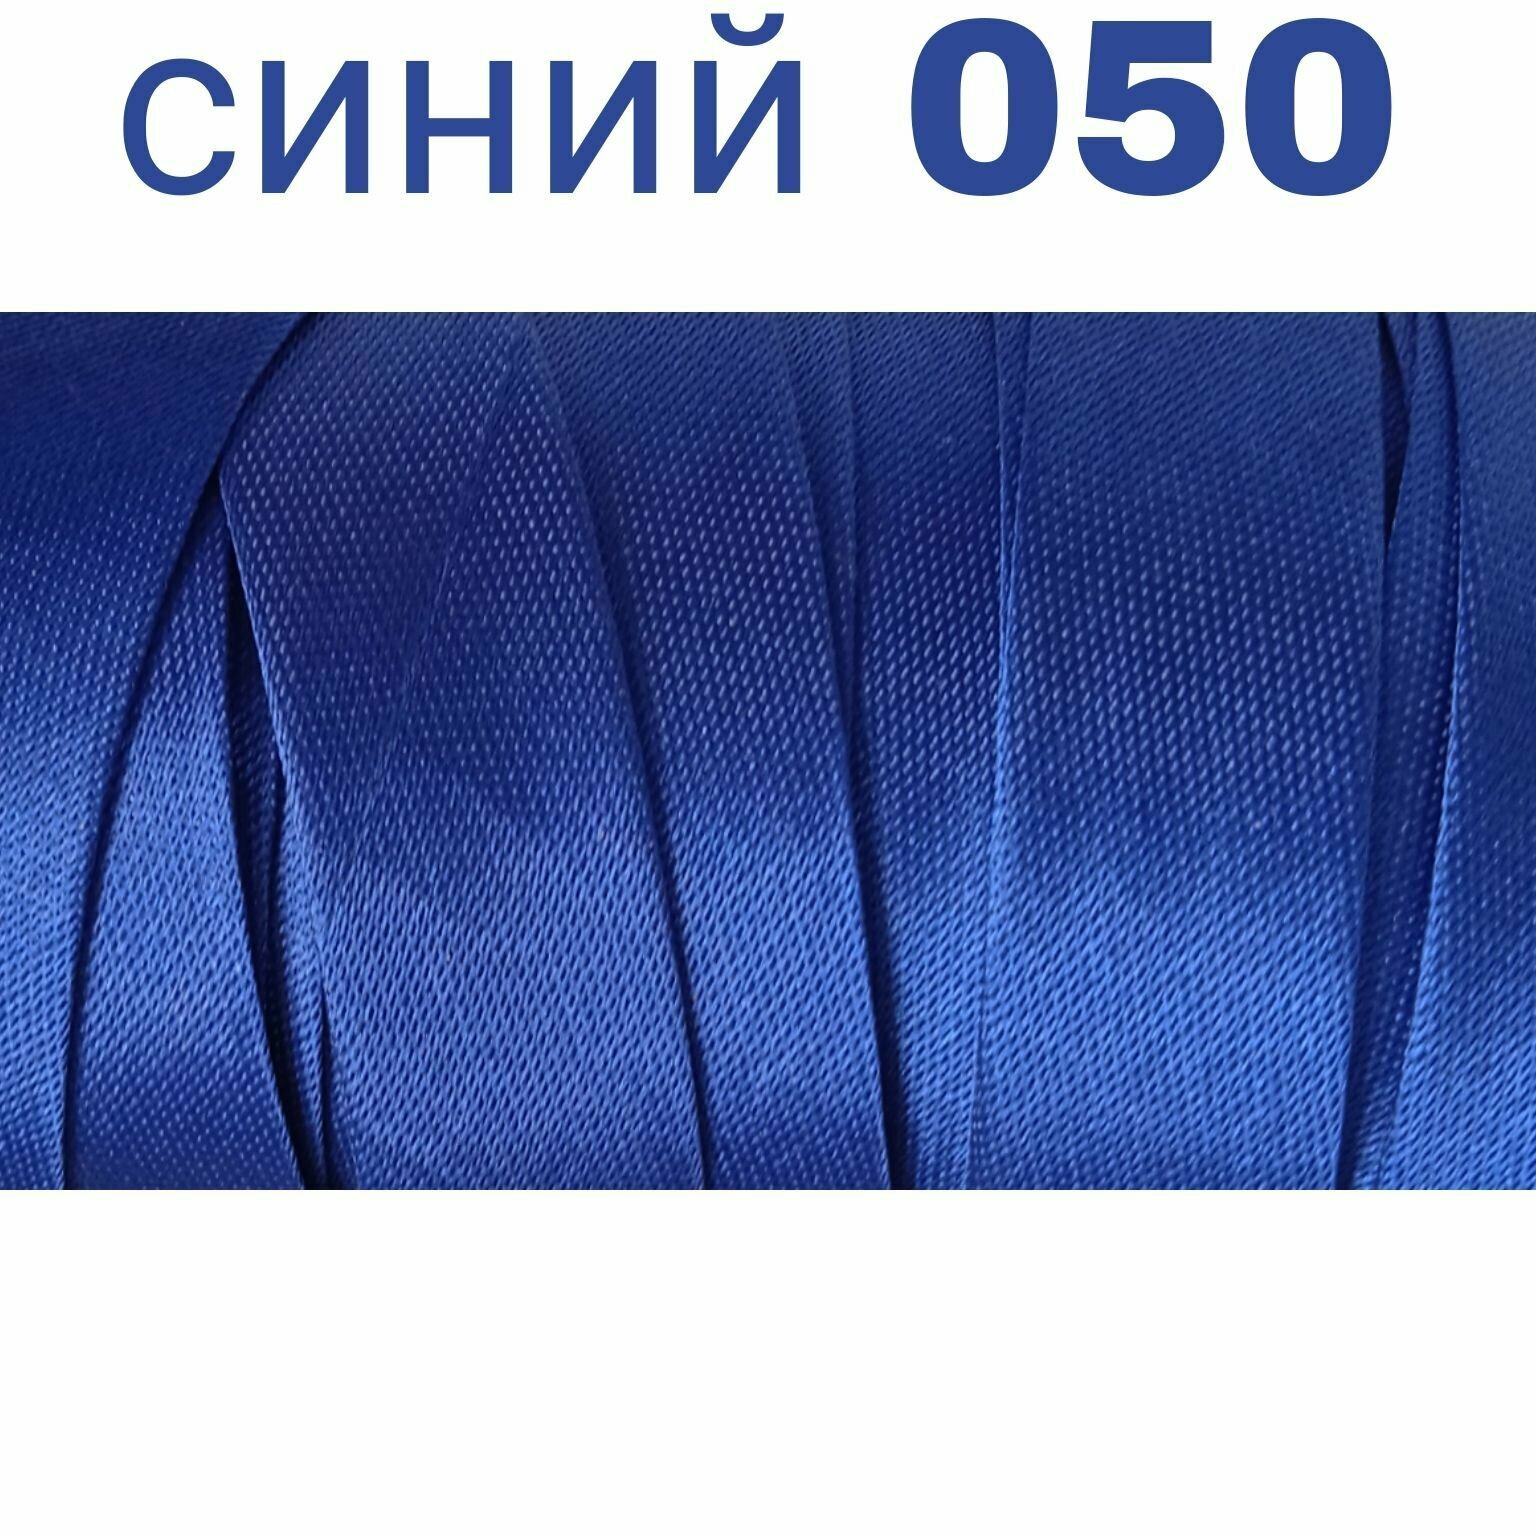 Косая бейка для шитья атлас. шир. 15 мм цв. синий 050 (10 метров)